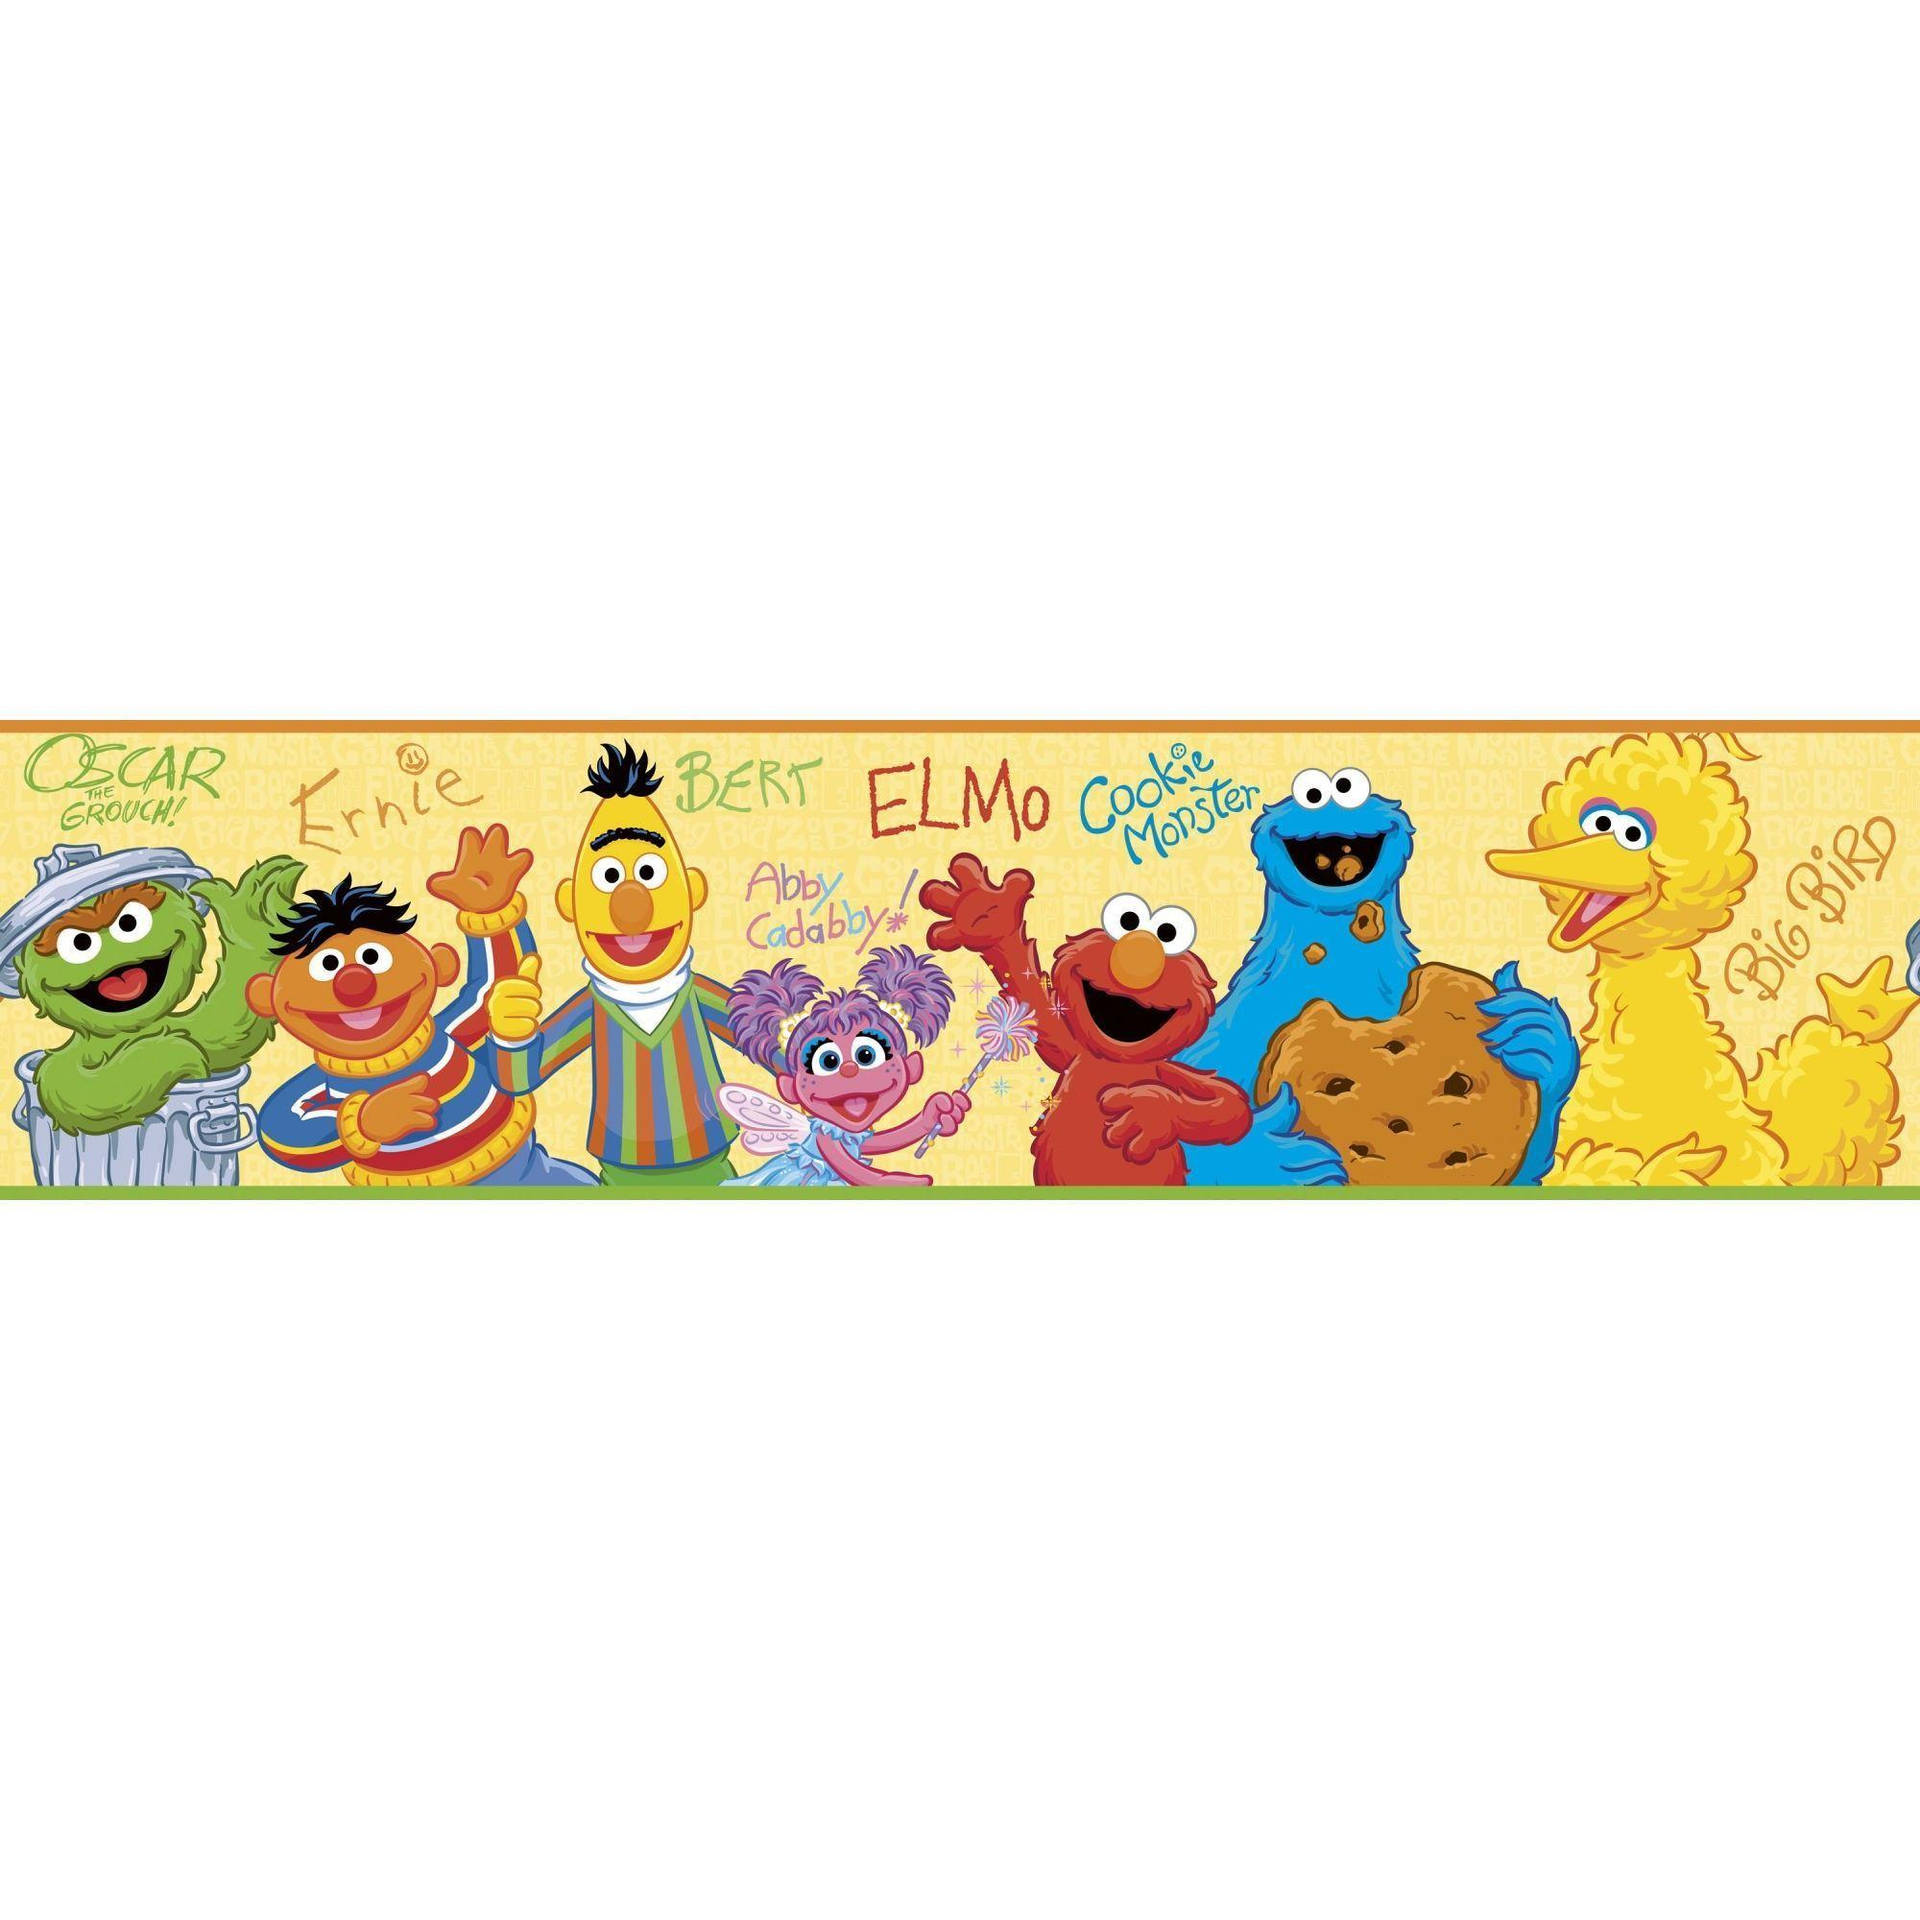 Sesame Street Cartoon Art Wallpaper